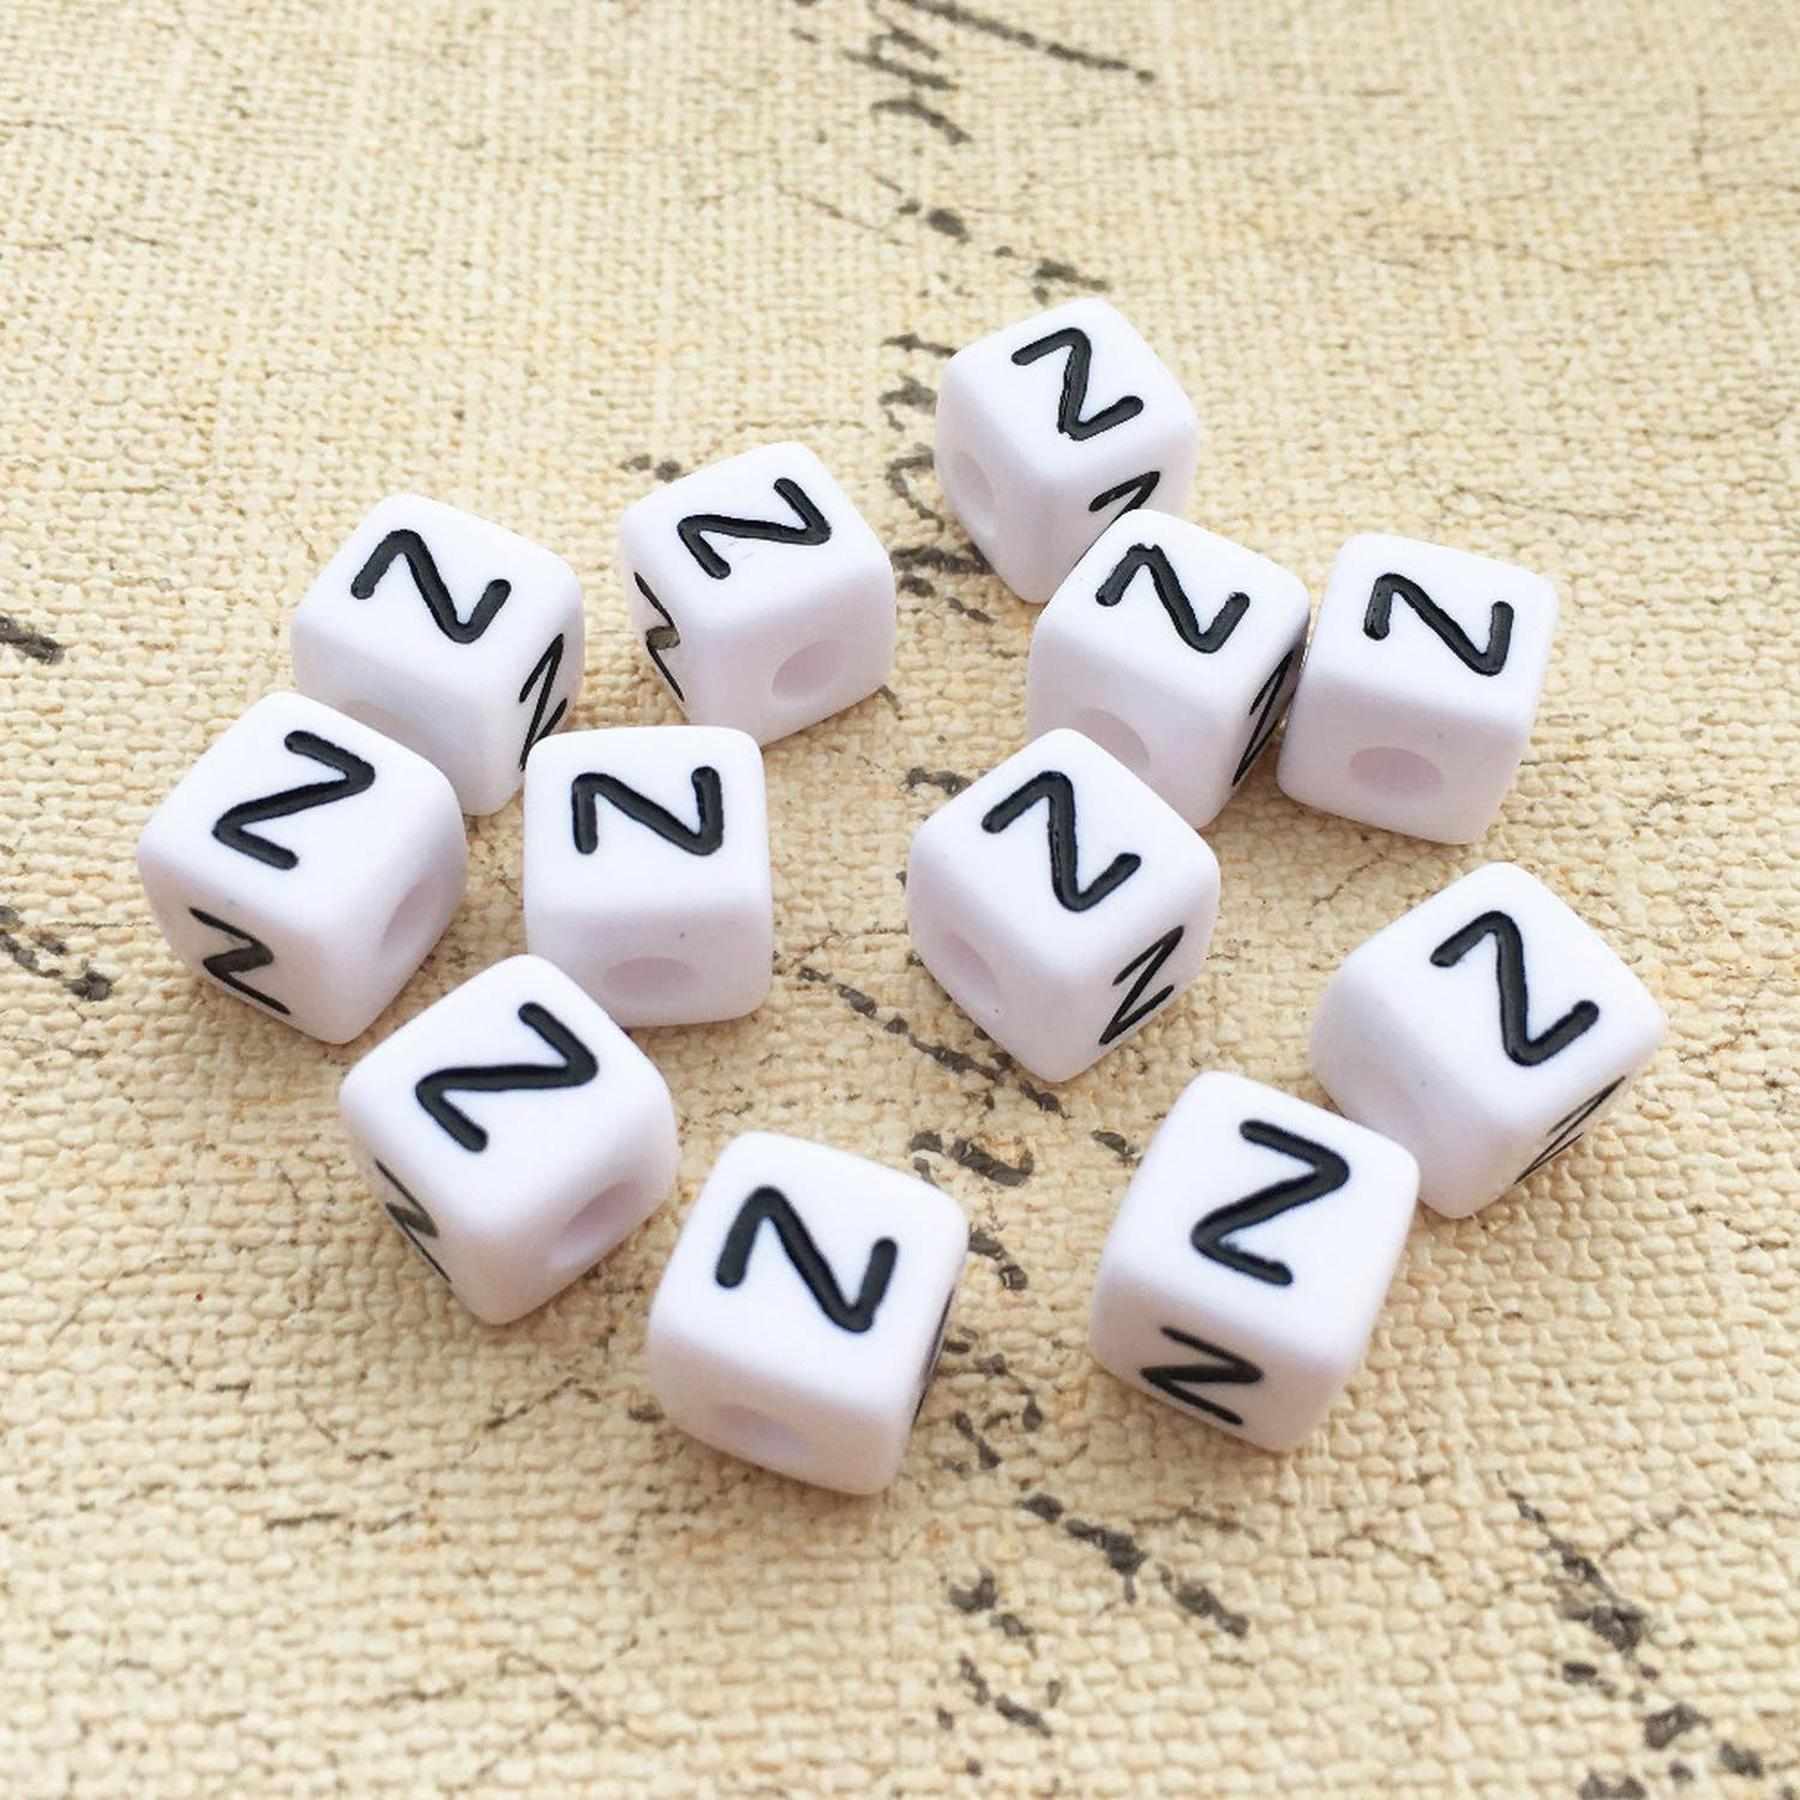 Buchstaben Perlen, 30 Stück, 6x6 mm, weiß mit schwarz, eckig, Buchstabe Z